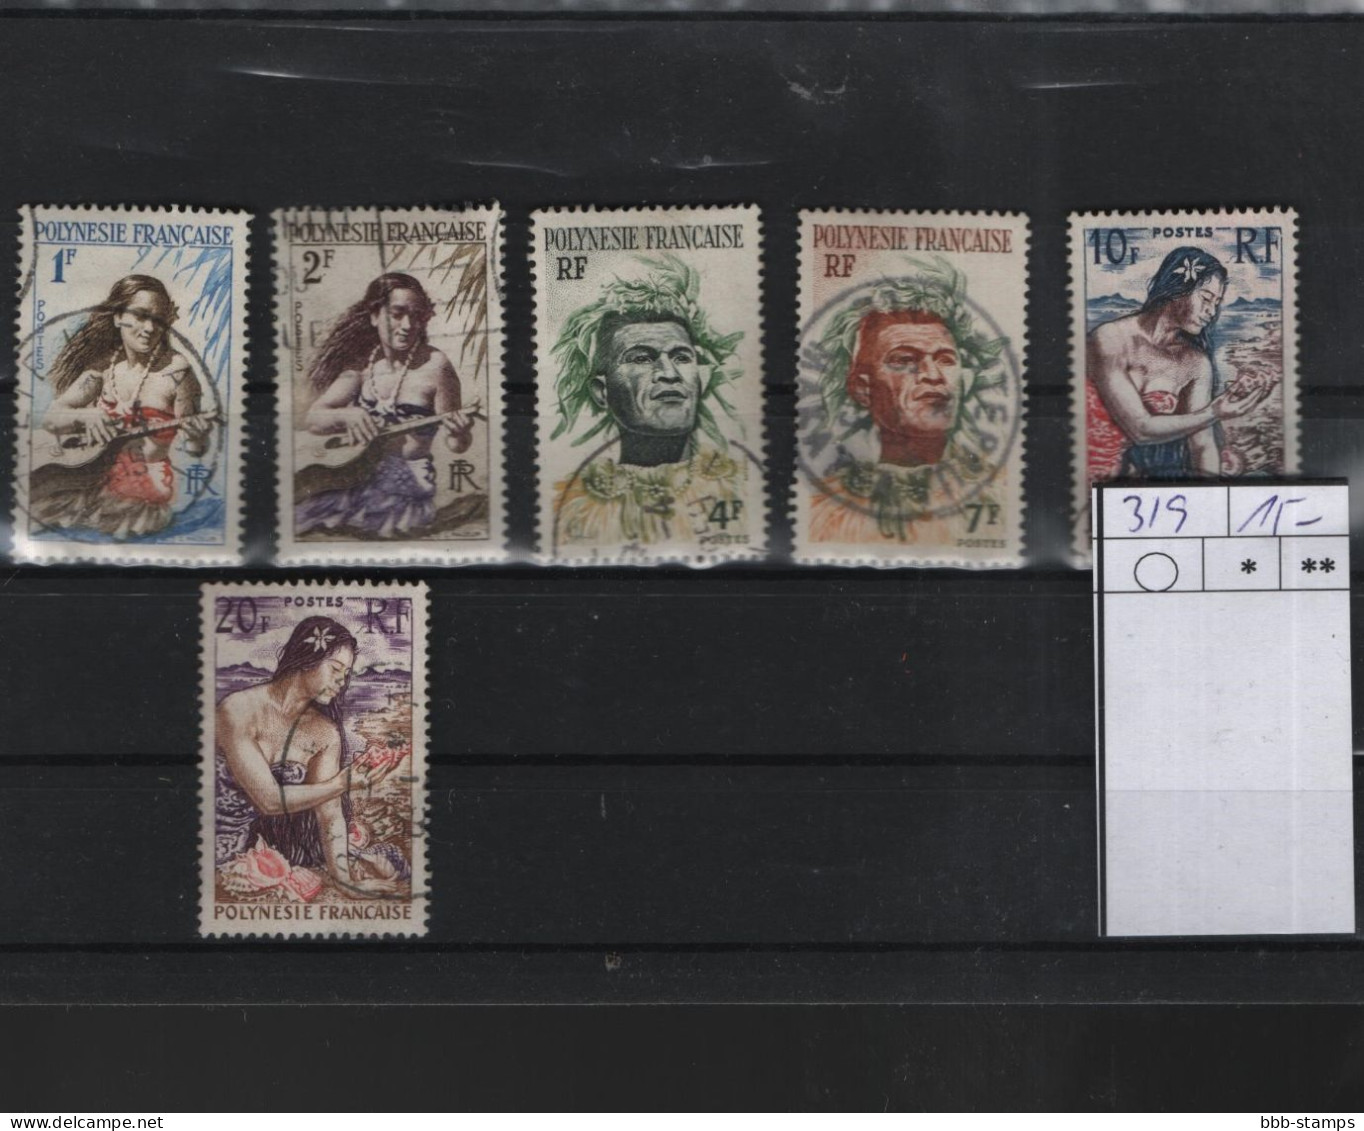 Französisch Polynesien Michel Cat.No. Used 3/9 - Used Stamps